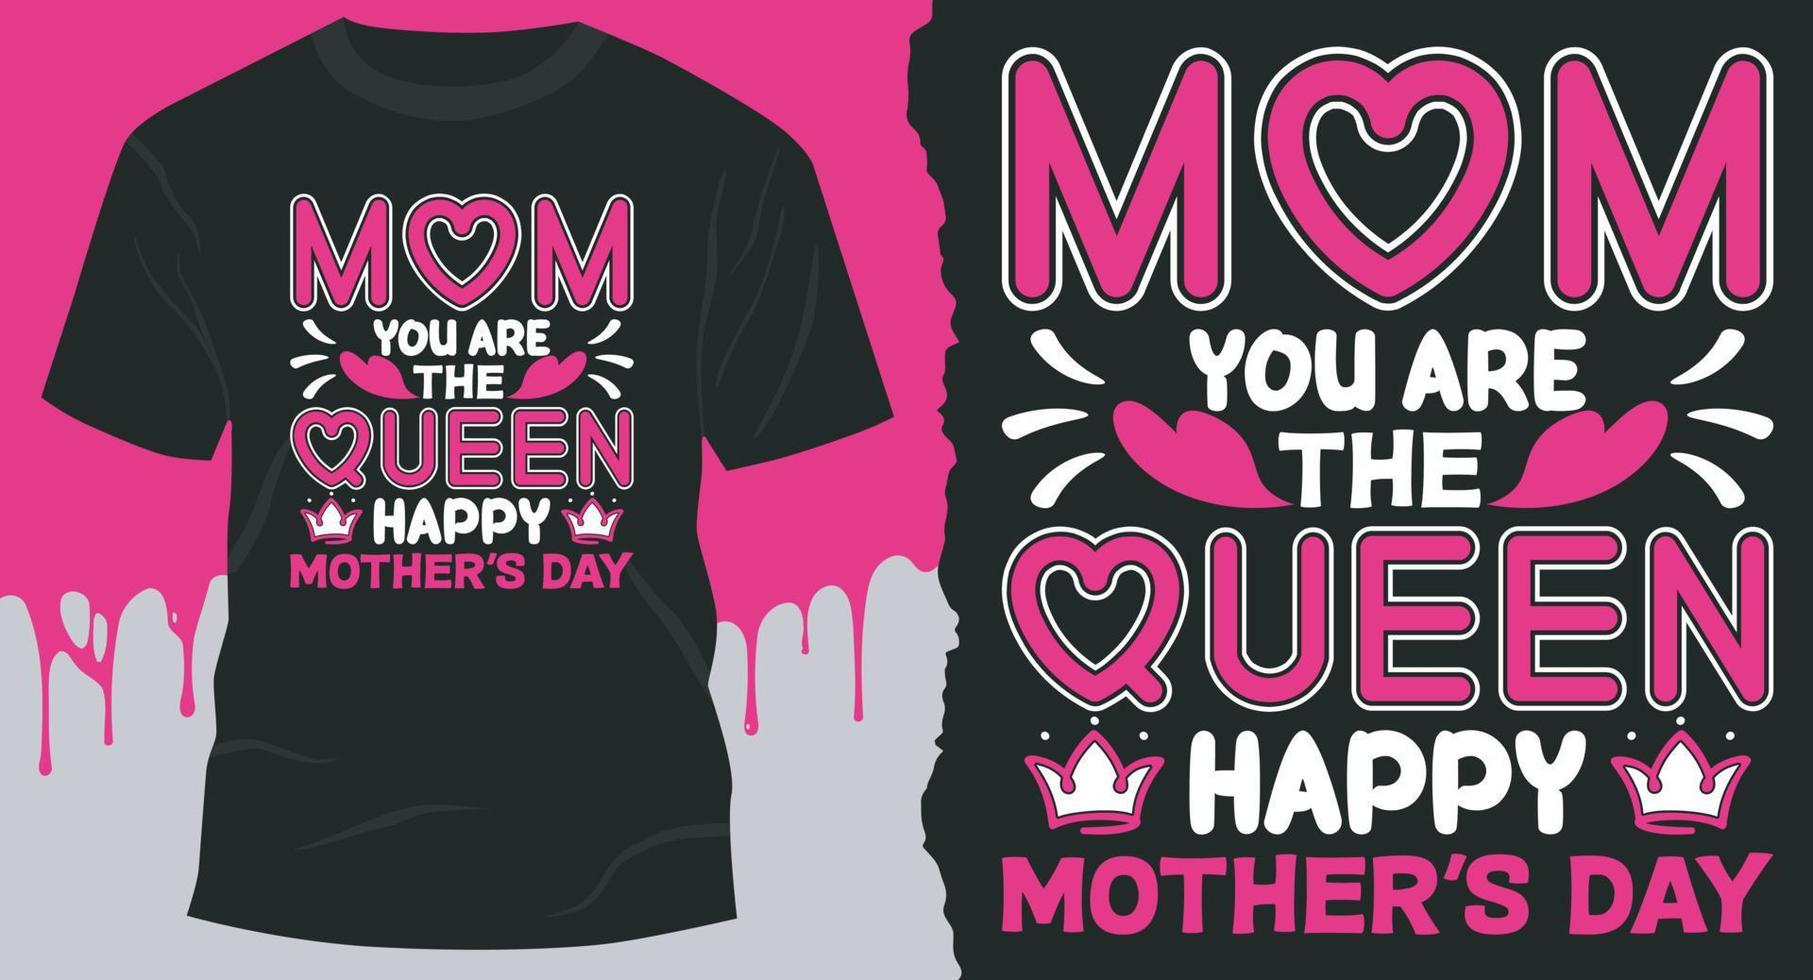 Mama, du bist die Königin, glückliches Muttertags-T-Shirt-Design. bestes Vektordesign für Muttertags-T-Shirt vektor